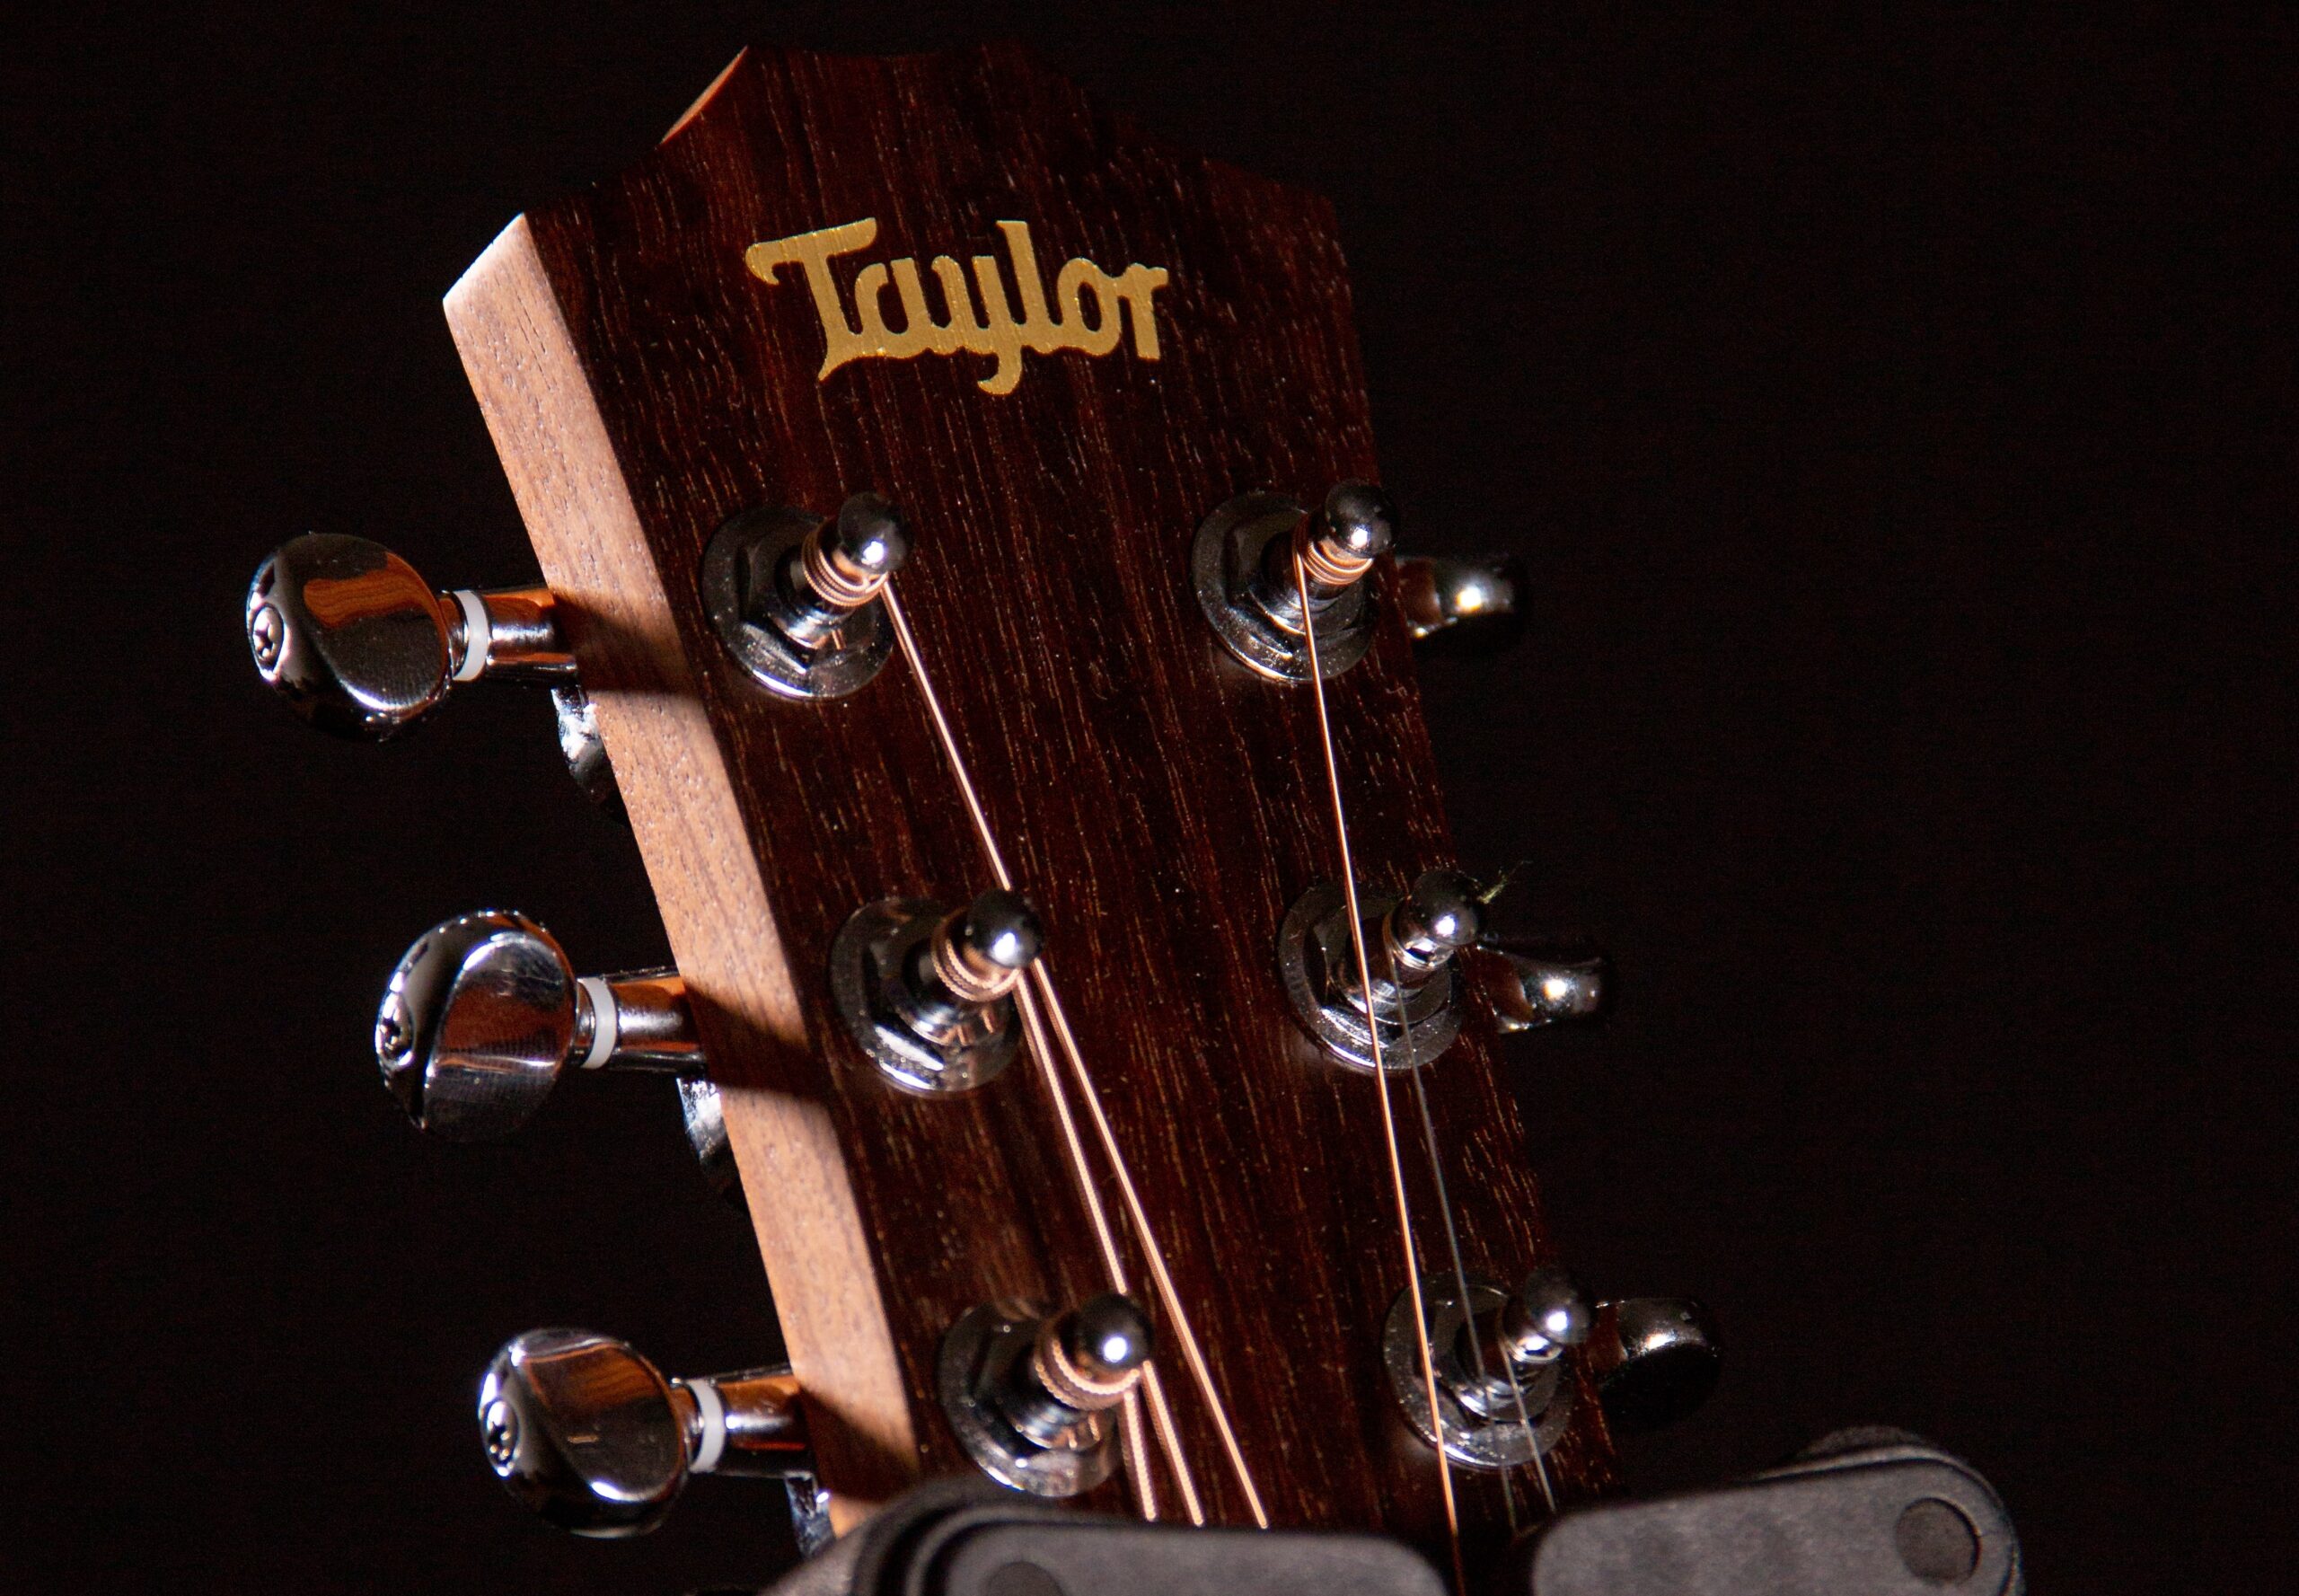 Taylor's guitar